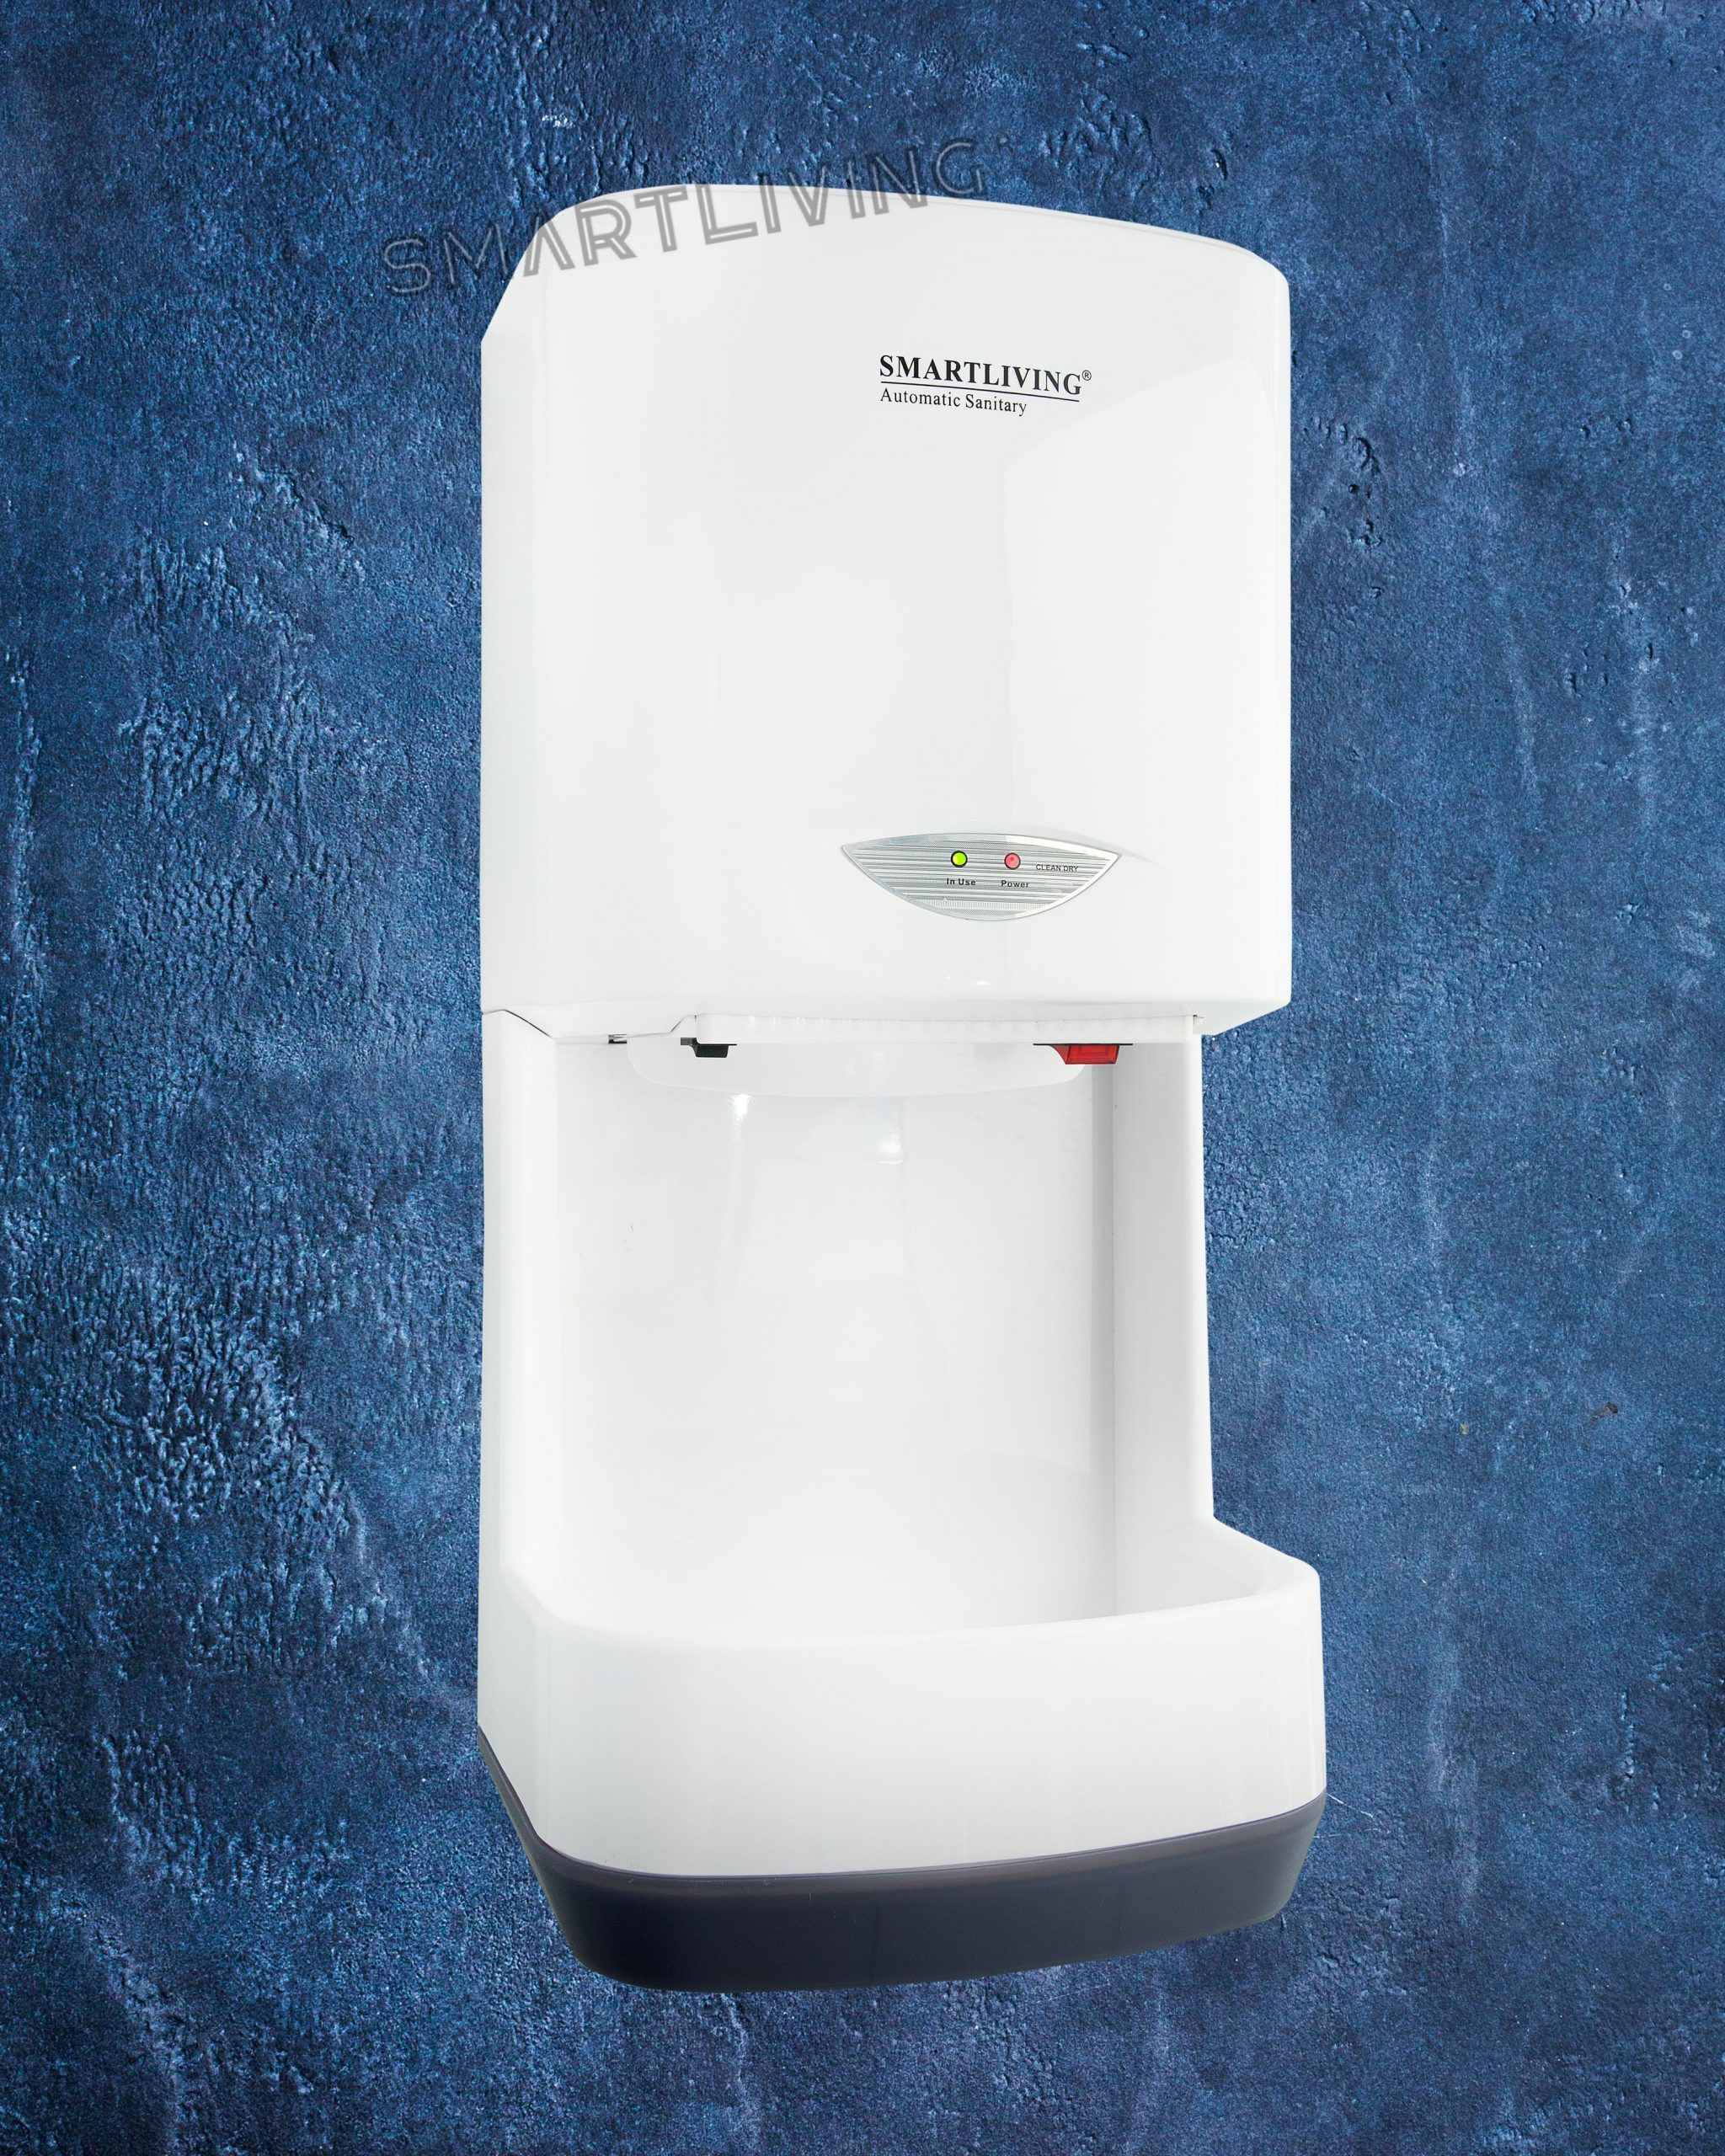 Máy sấy tay nhà vệ sinh giá rẻ Smartliving YM203 có thiết kế nhỏ gọn. Tuy nhiên lại mang đến hiệu suất cao, làm sấy tay khô chỉ trong vòng 1 phút